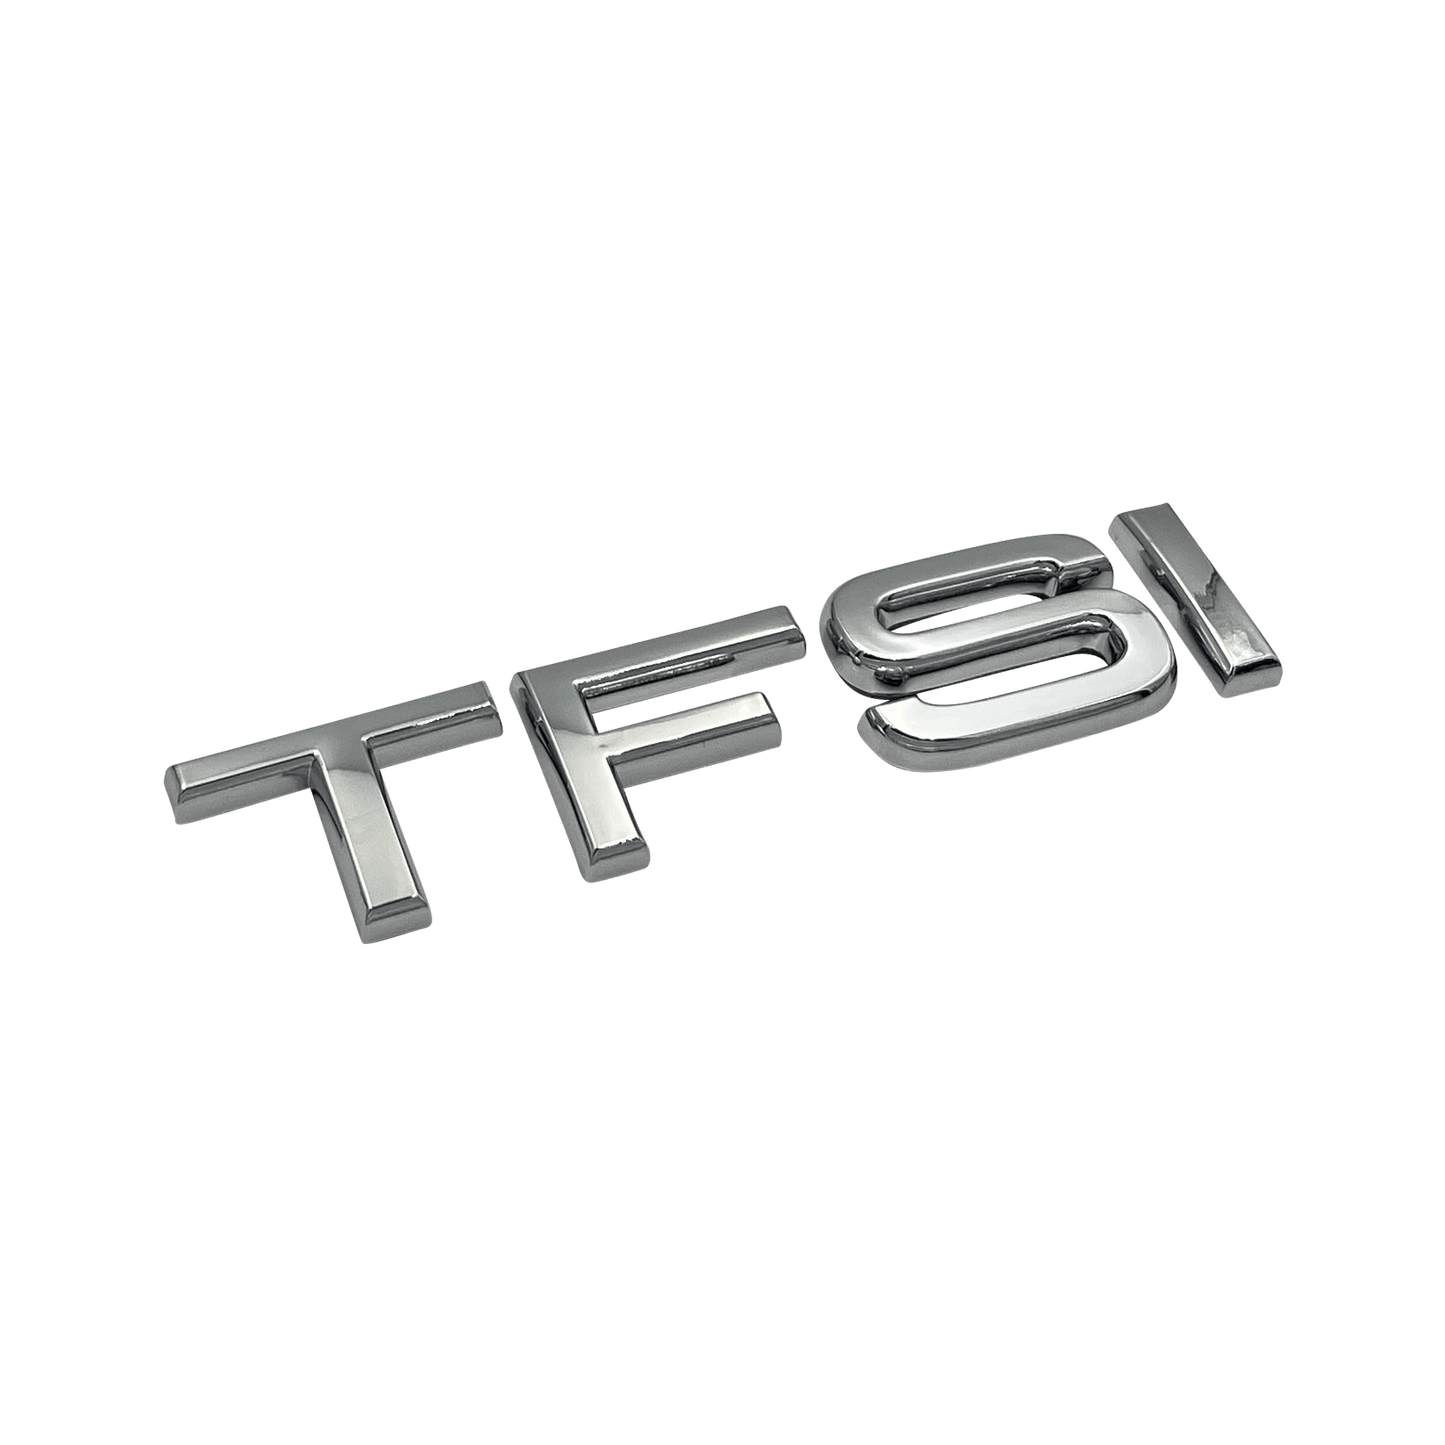 Chrome Audi TFSI Rear Emblem Badge 